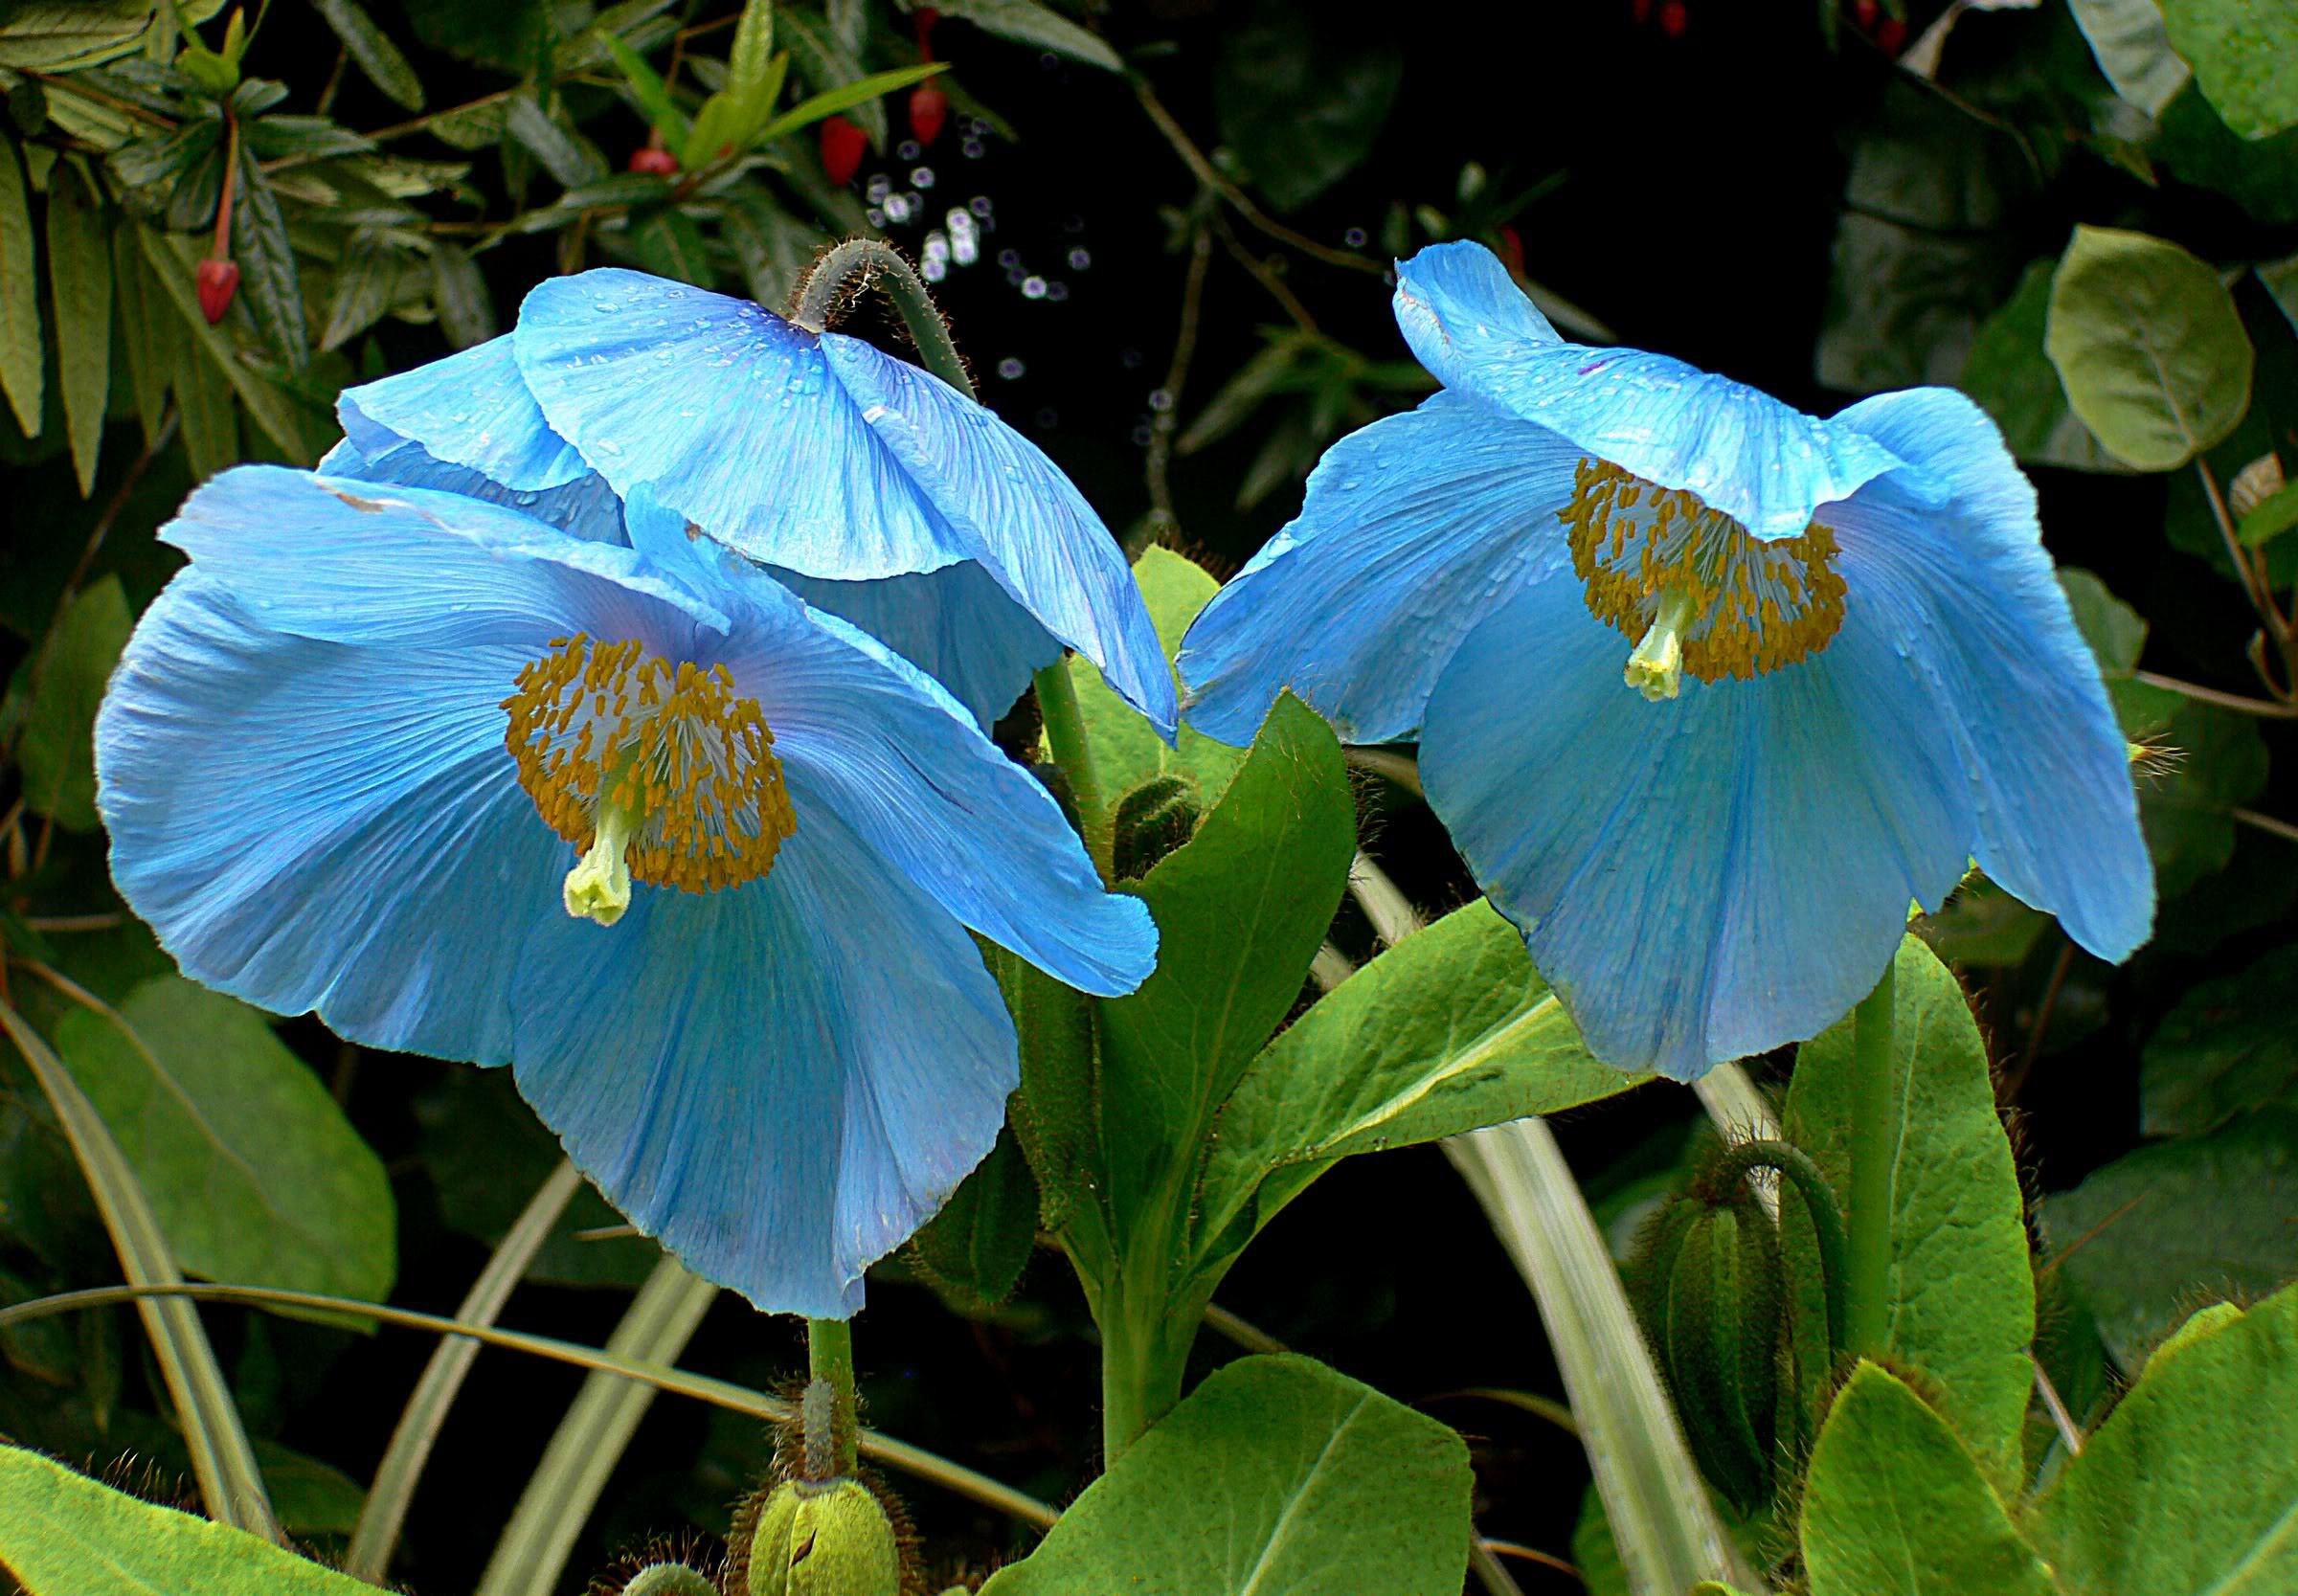 Light Blue Flowers In The Field 